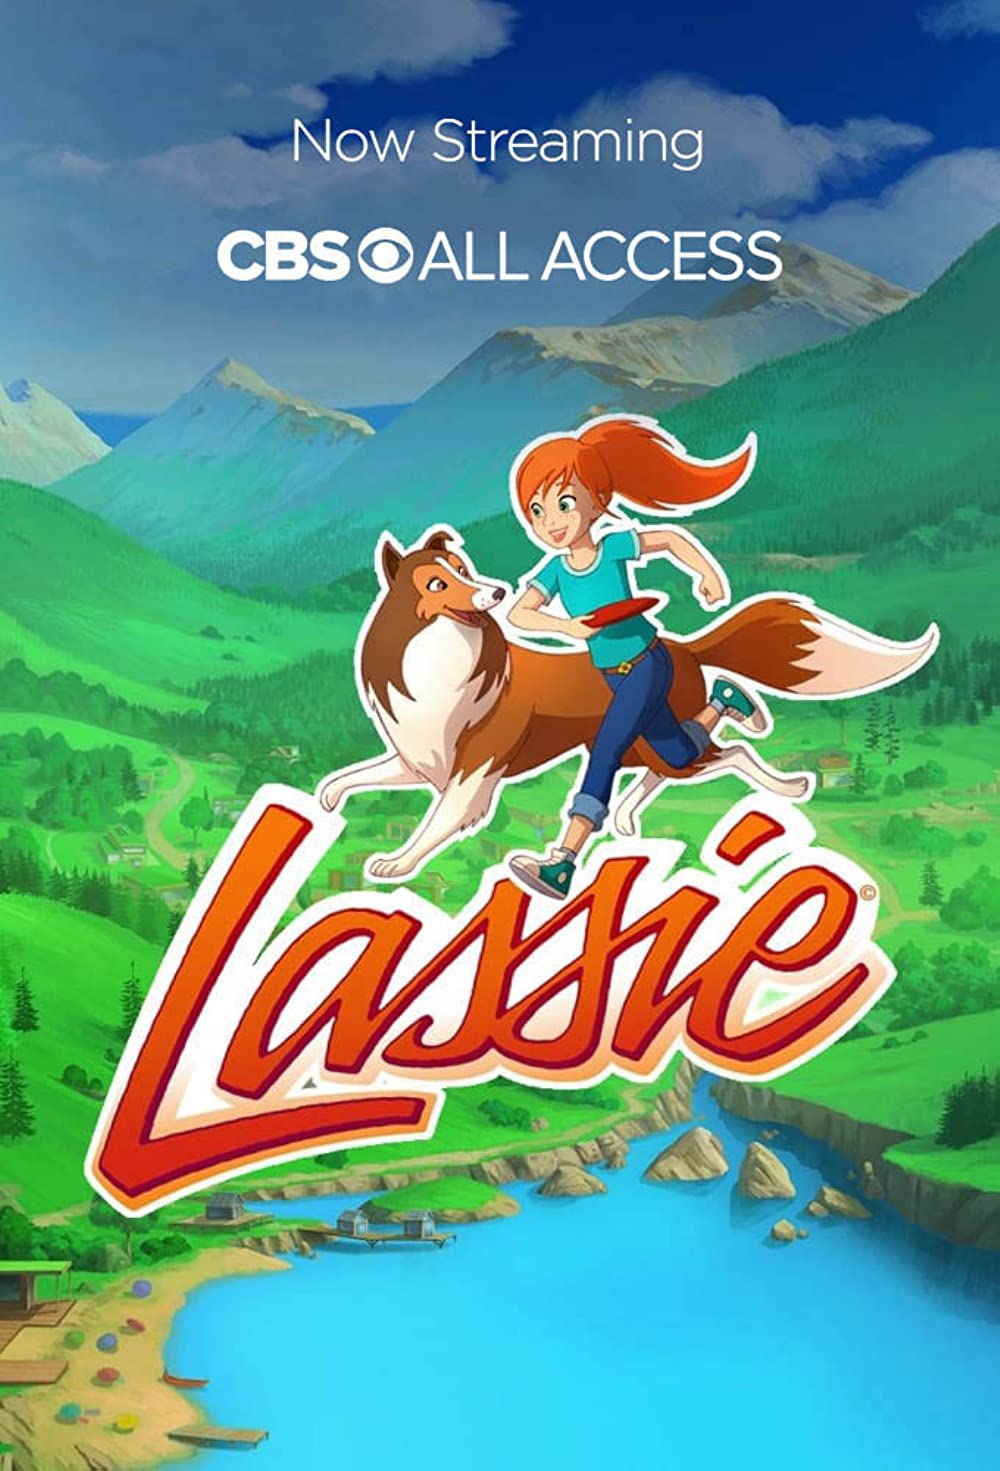 Lassie Série Tv 2014 Allociné 